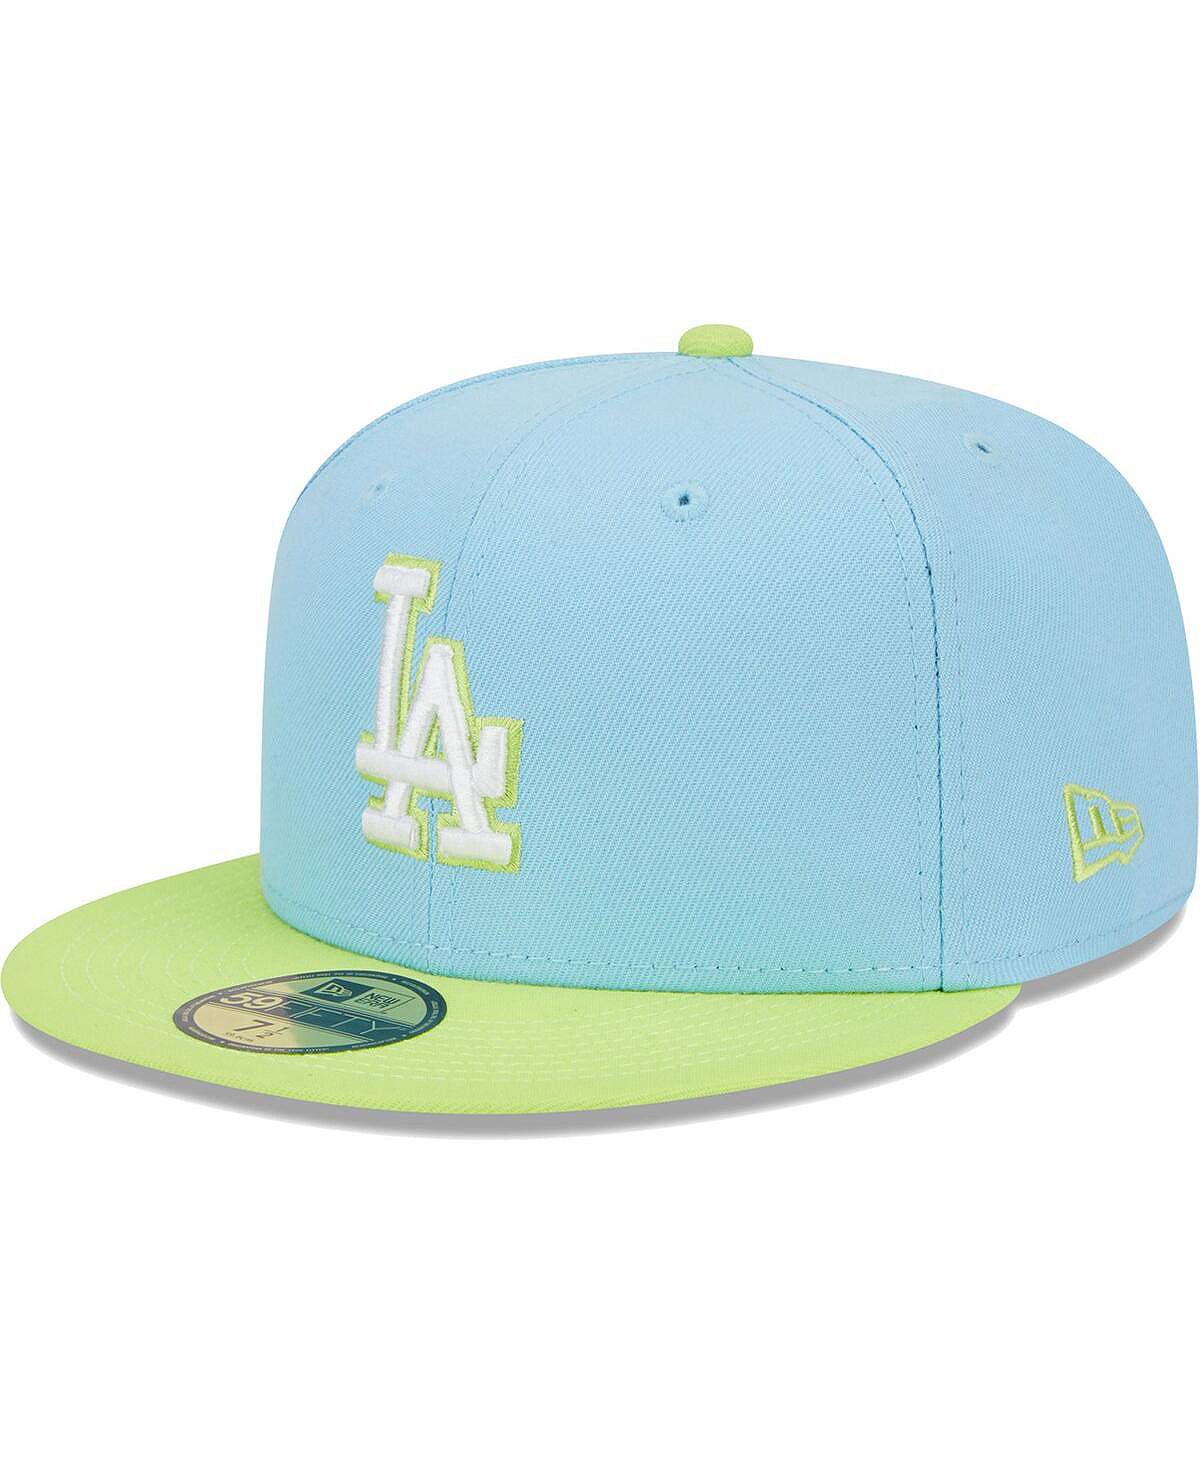 Мужская светло-голубая, неоново-зеленая шляпа Los Angeles Dodgers Spring Color, двухцветная 59FIFTY. New Era